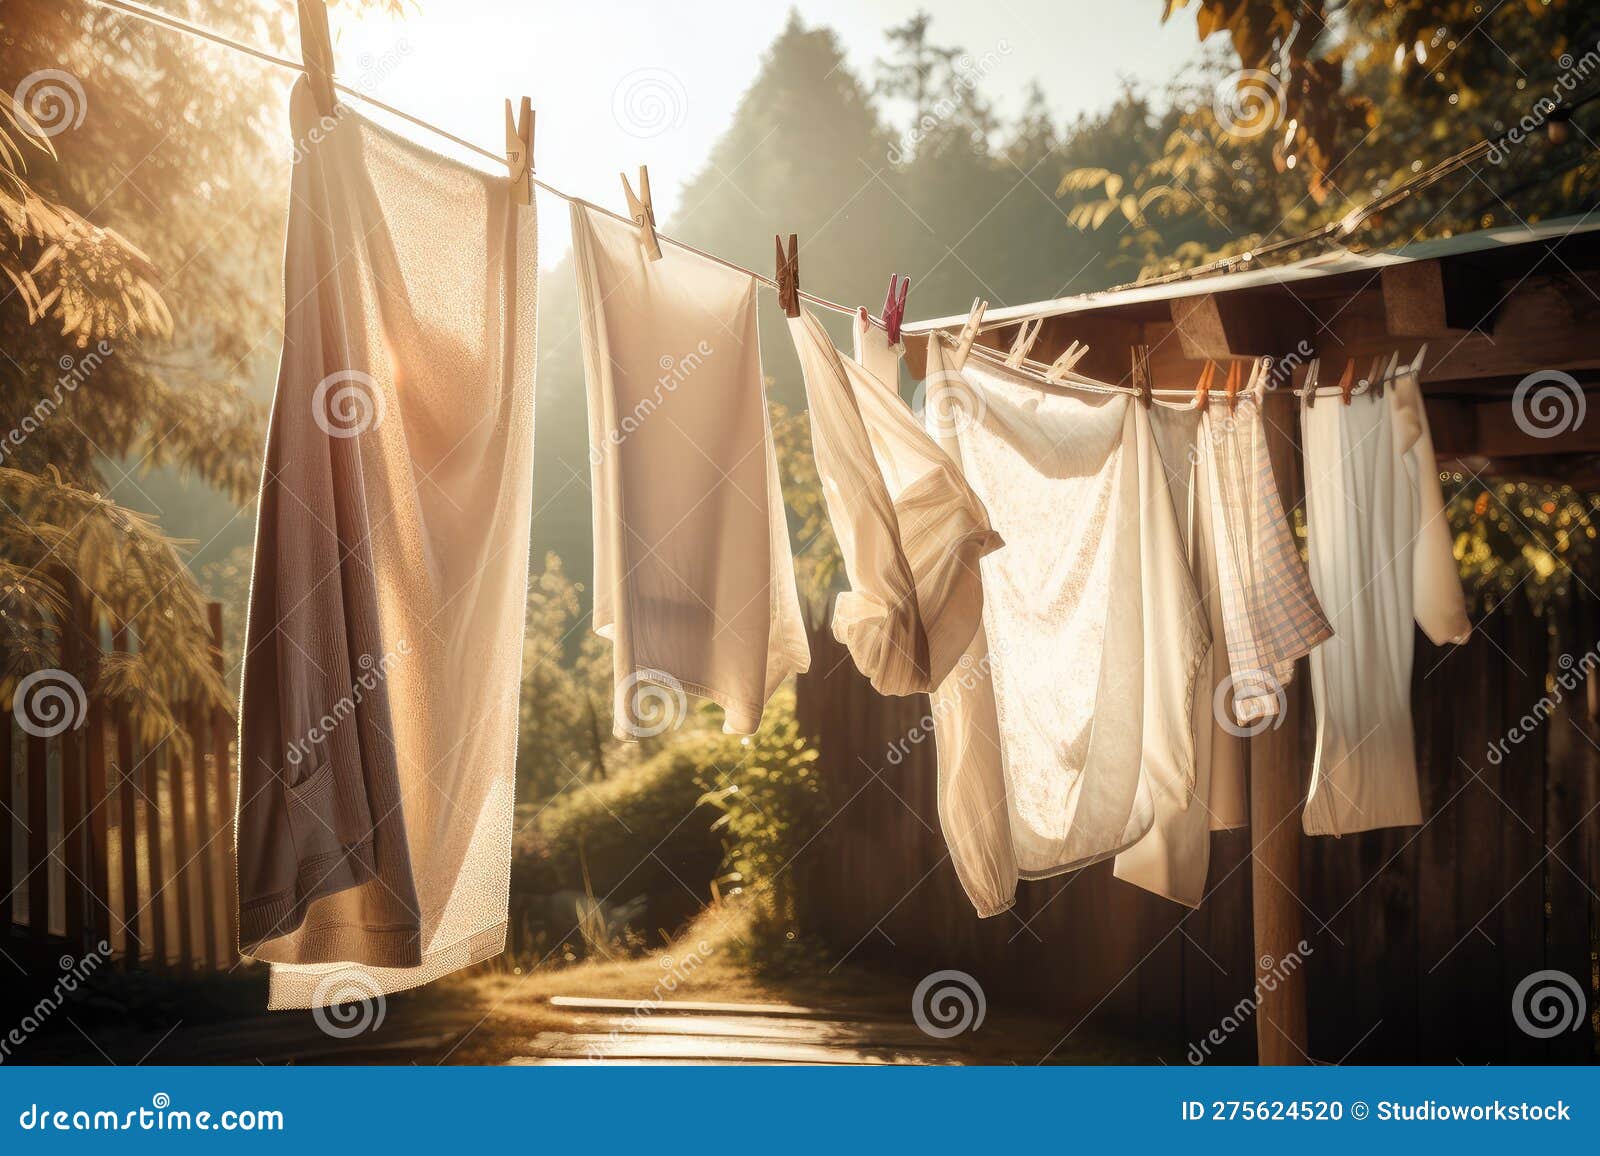 https://thumbs.dreamstime.com/z/un-tendedero-con-s%C3%A1banas-reci%C3%A9n-lavadas-y-toallas-colgando-del-sol-creado-ai-generativo-275624520.jpg